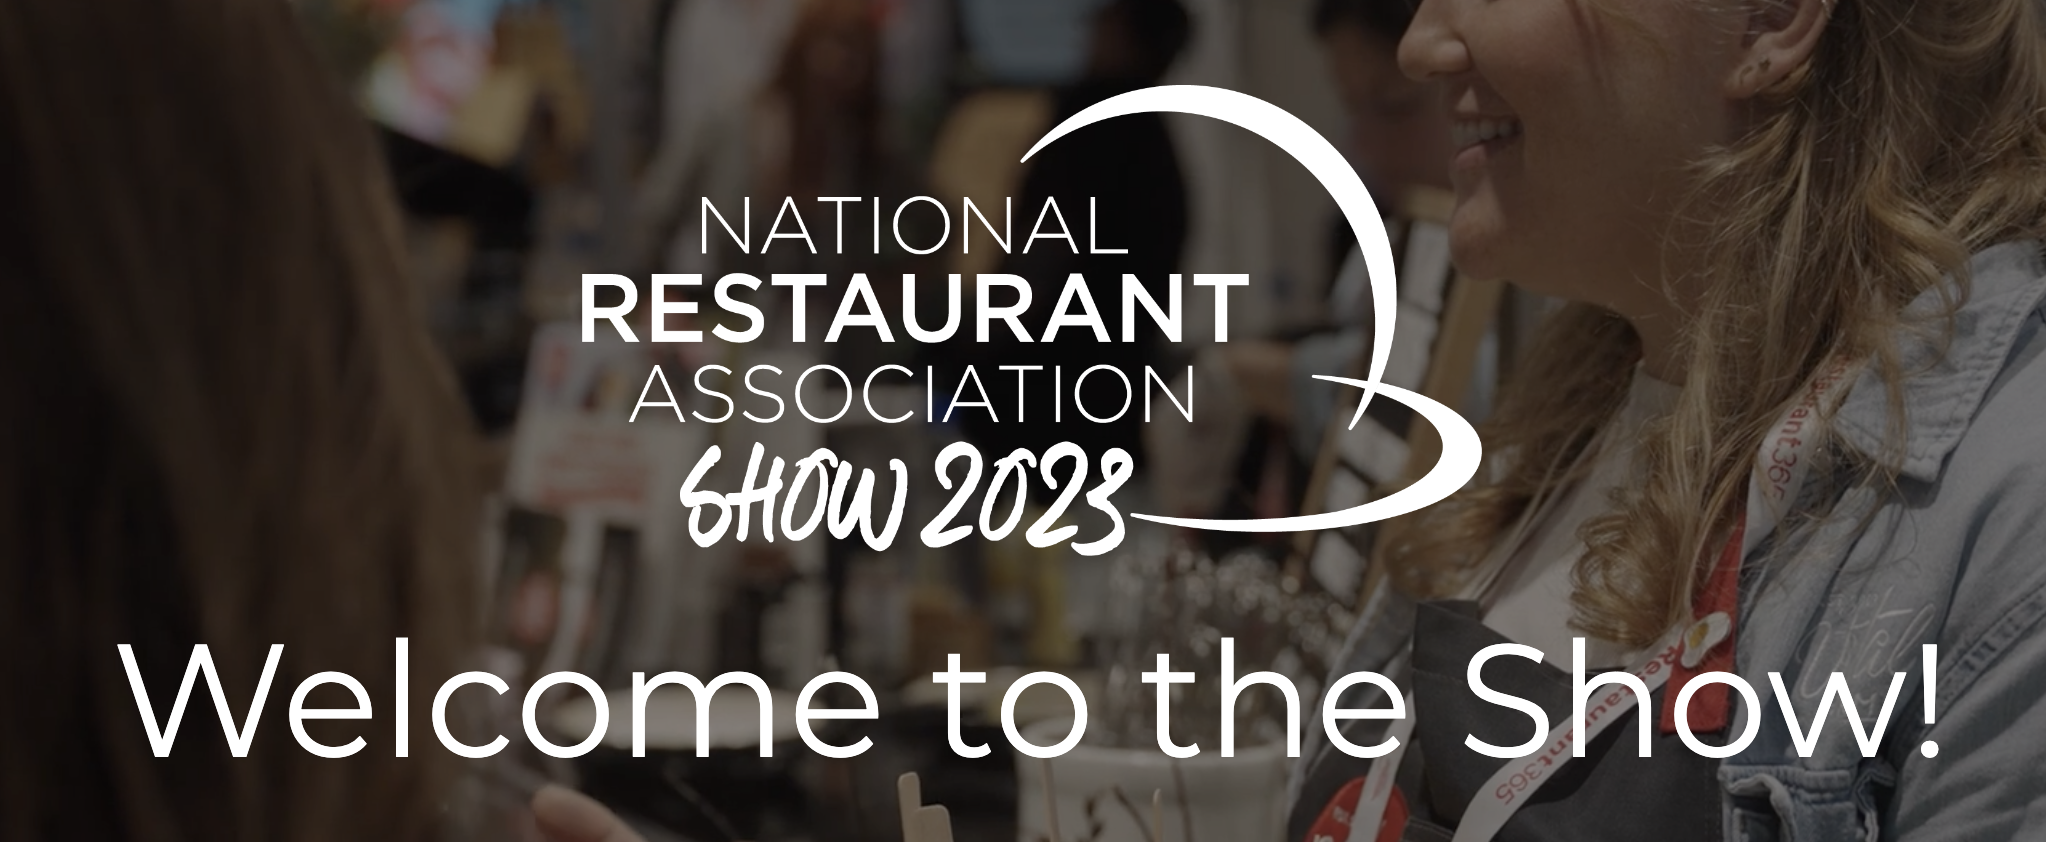 National Restaurant Association Show 2023 banner